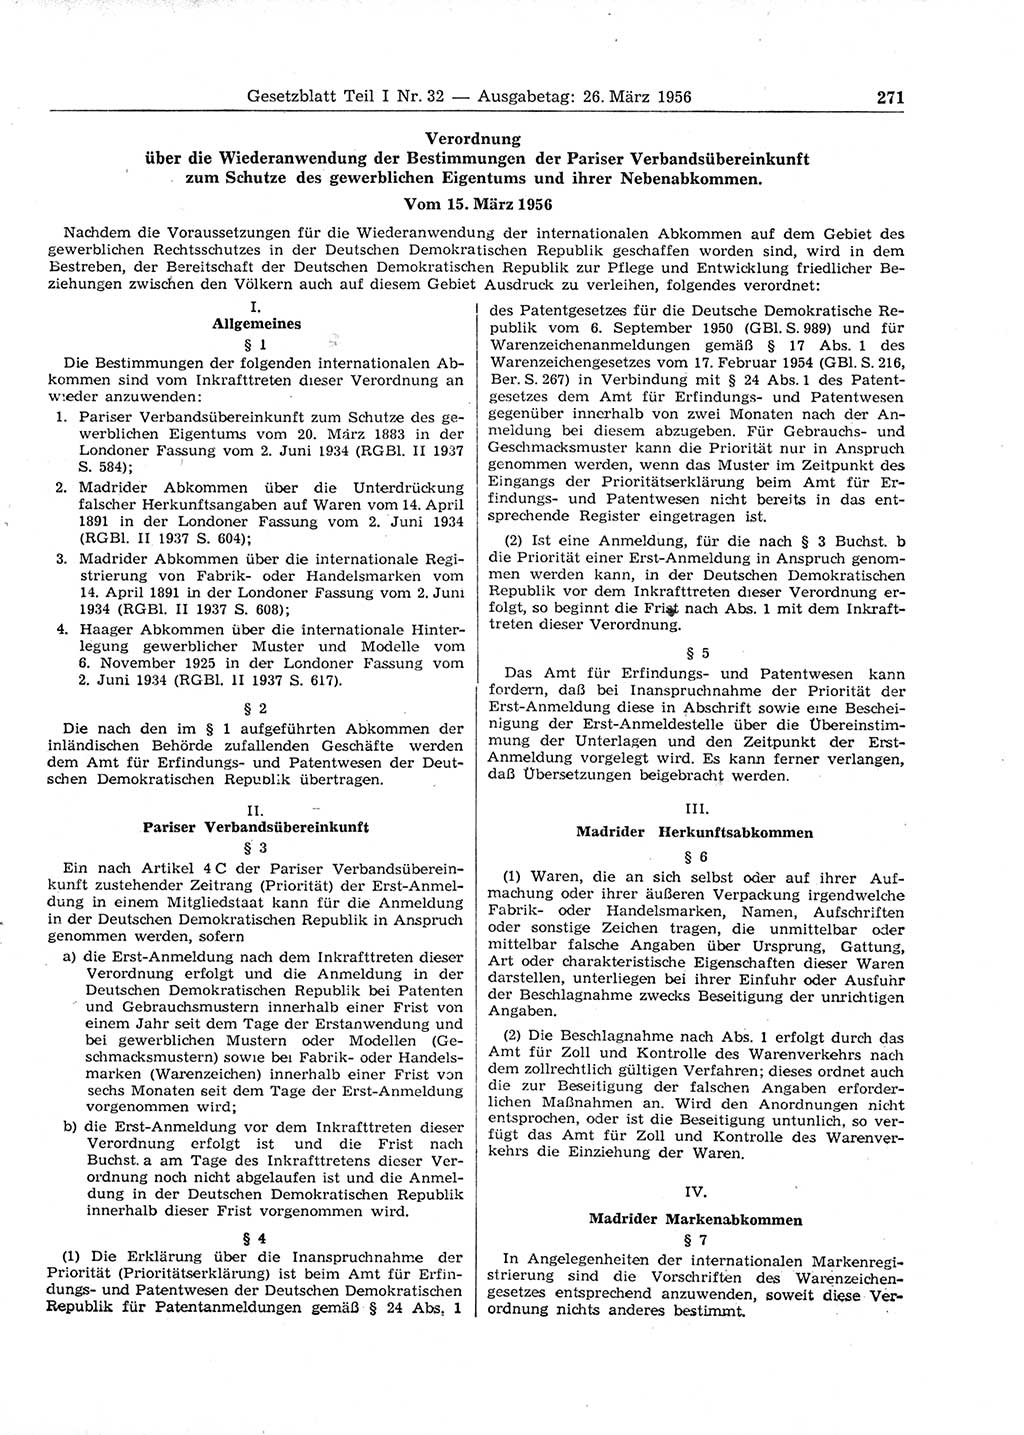 Gesetzblatt (GBl.) der Deutschen Demokratischen Republik (DDR) Teil Ⅰ 1956, Seite 271 (GBl. DDR Ⅰ 1956, S. 271)